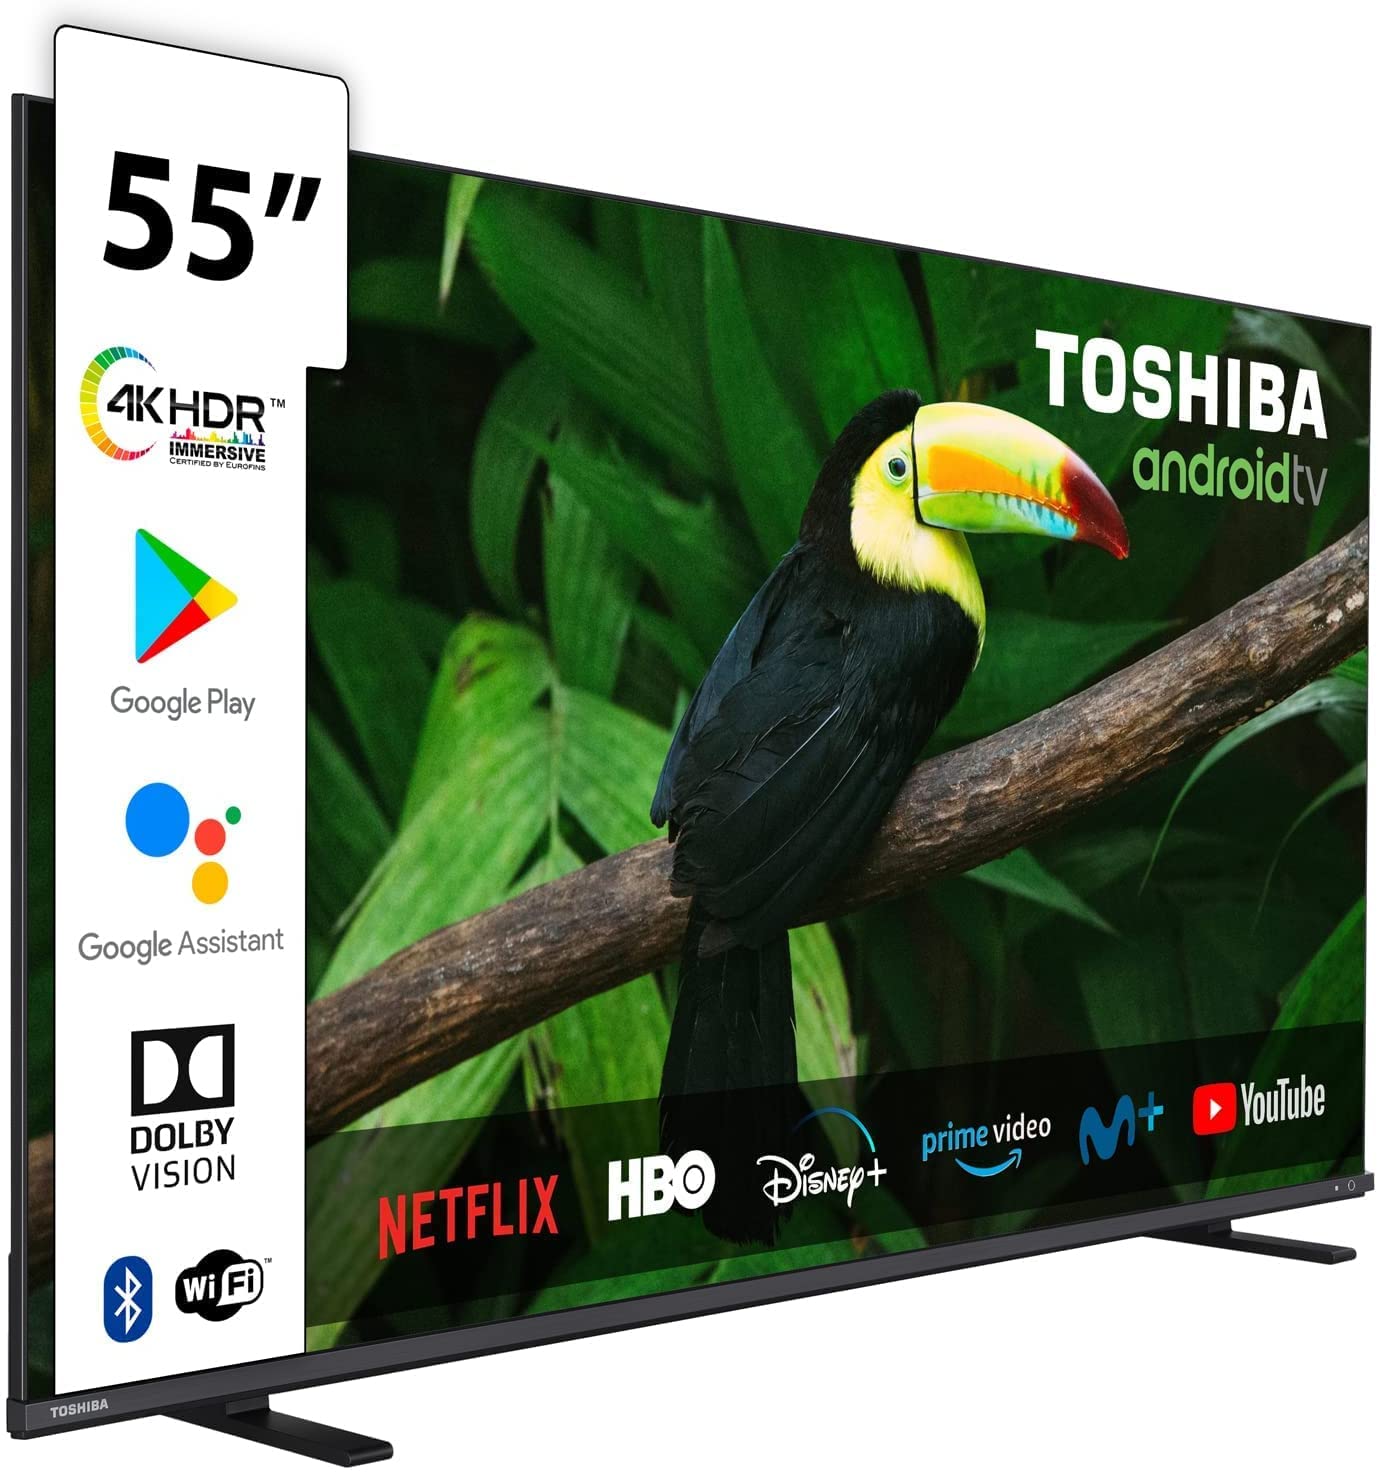 Mando a Distancia Original TV TOSHIBA UHD 4K // Modelo TV: 55UA2063DG